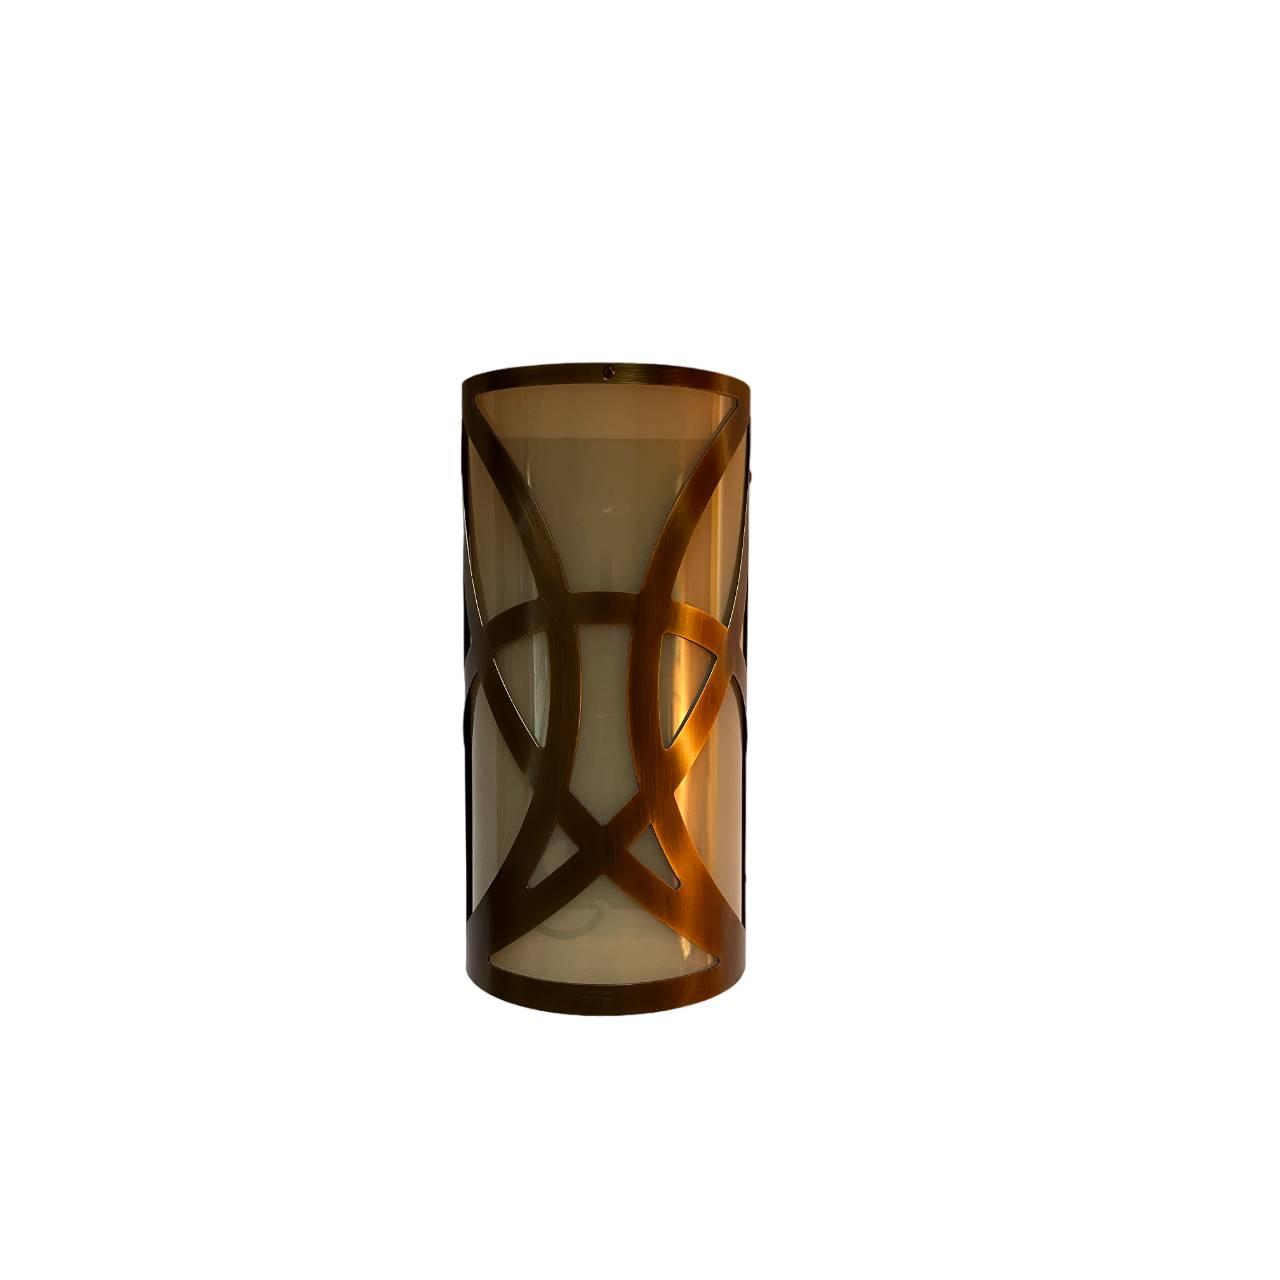 Selected image for ArteLights Zidna lampa, 90x140x290mm, Bronza